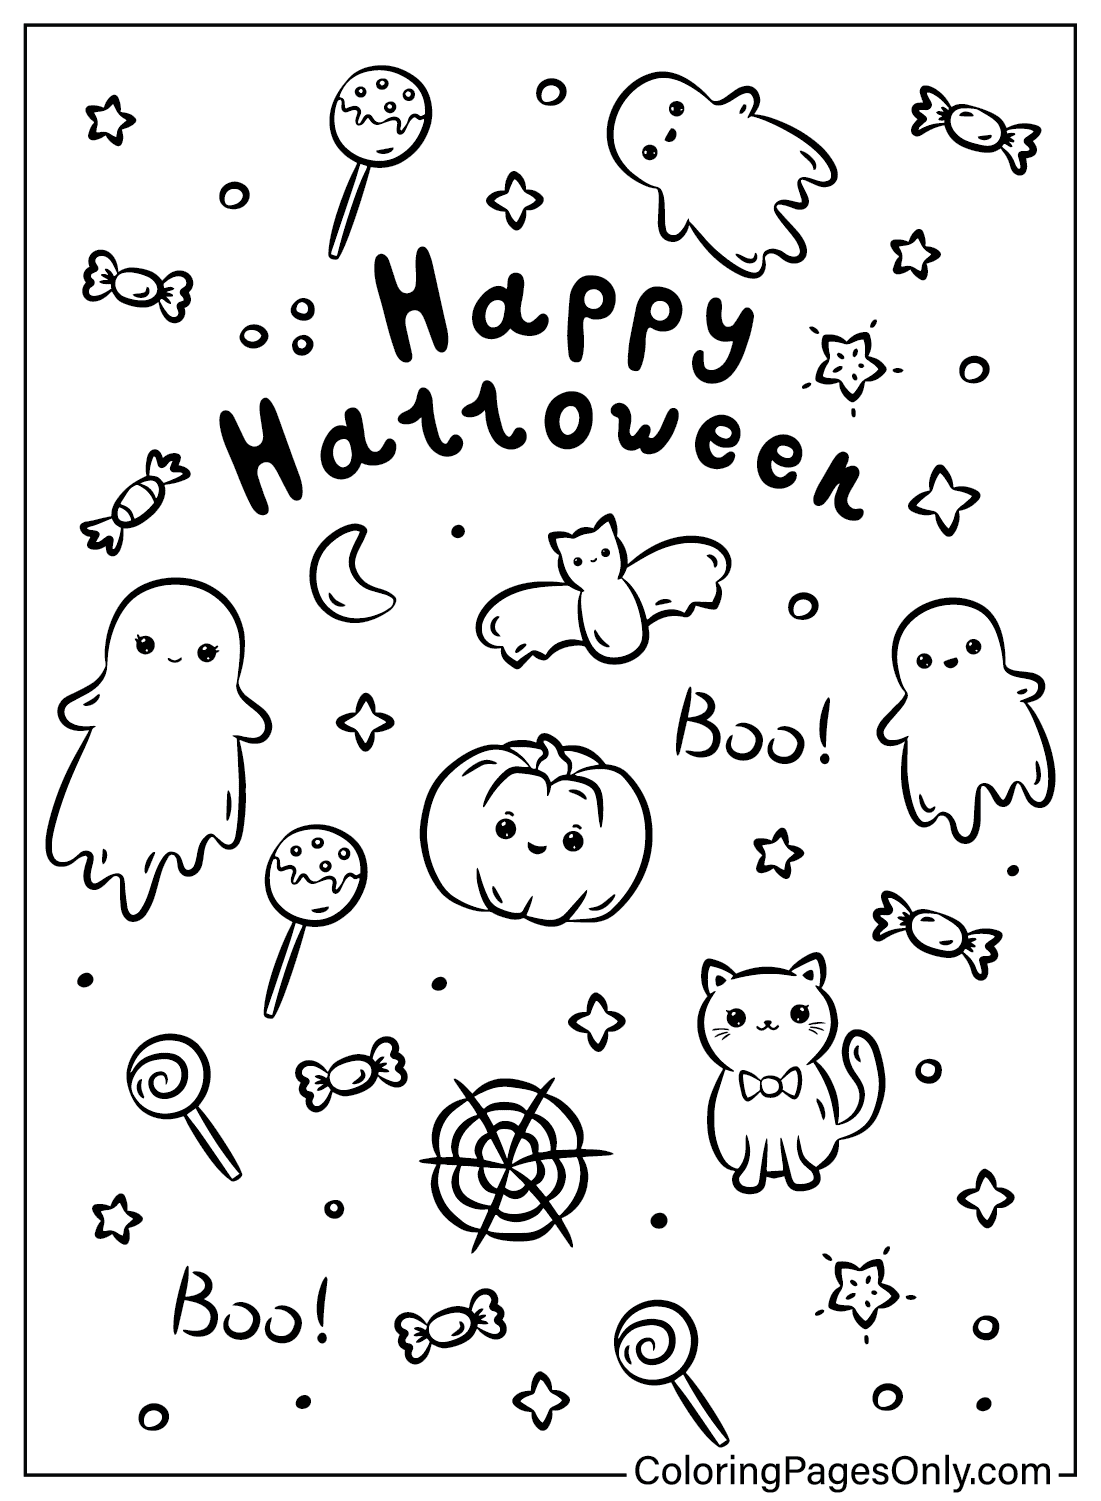 Página para colorear de Halloween Kawaii gratis de Kawaii Halloween